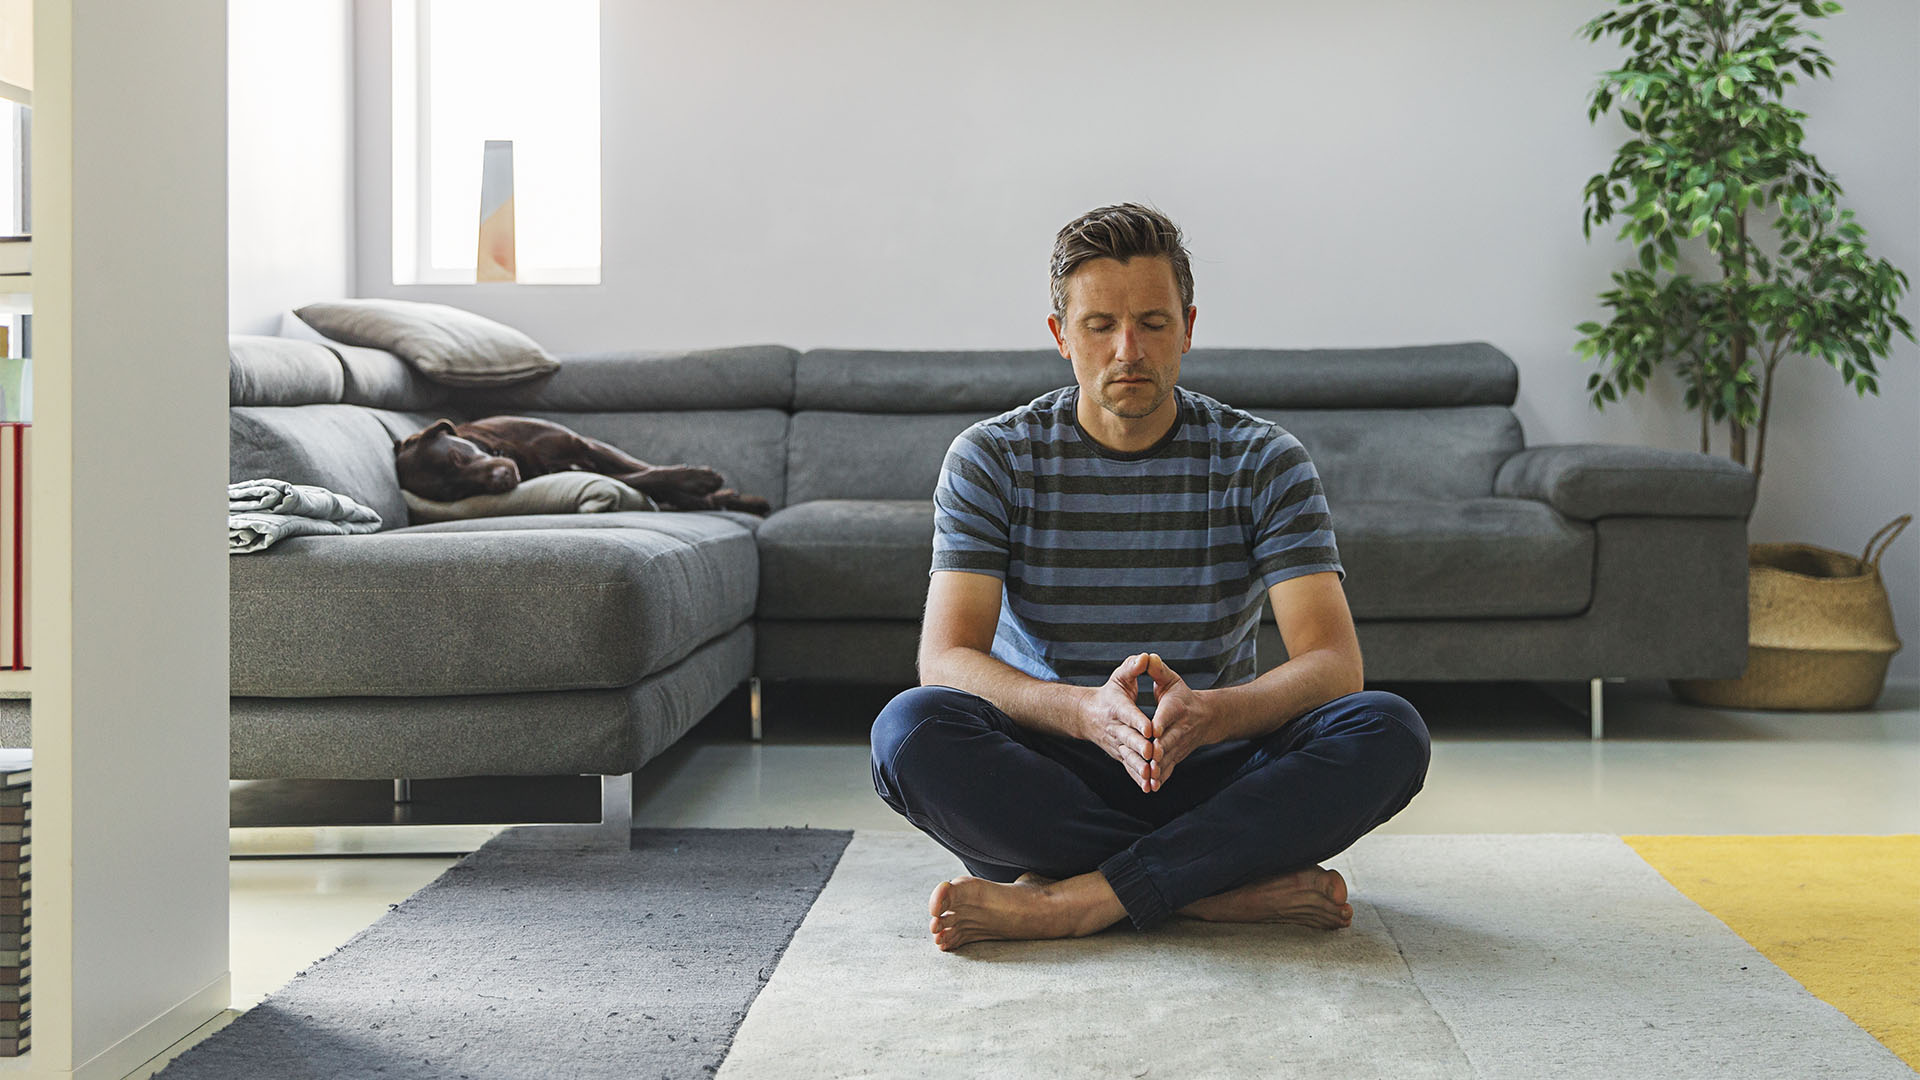 Reducir el estrés con técnicas de respiración y meditación puede ayudar a mantener la calma (Getty)